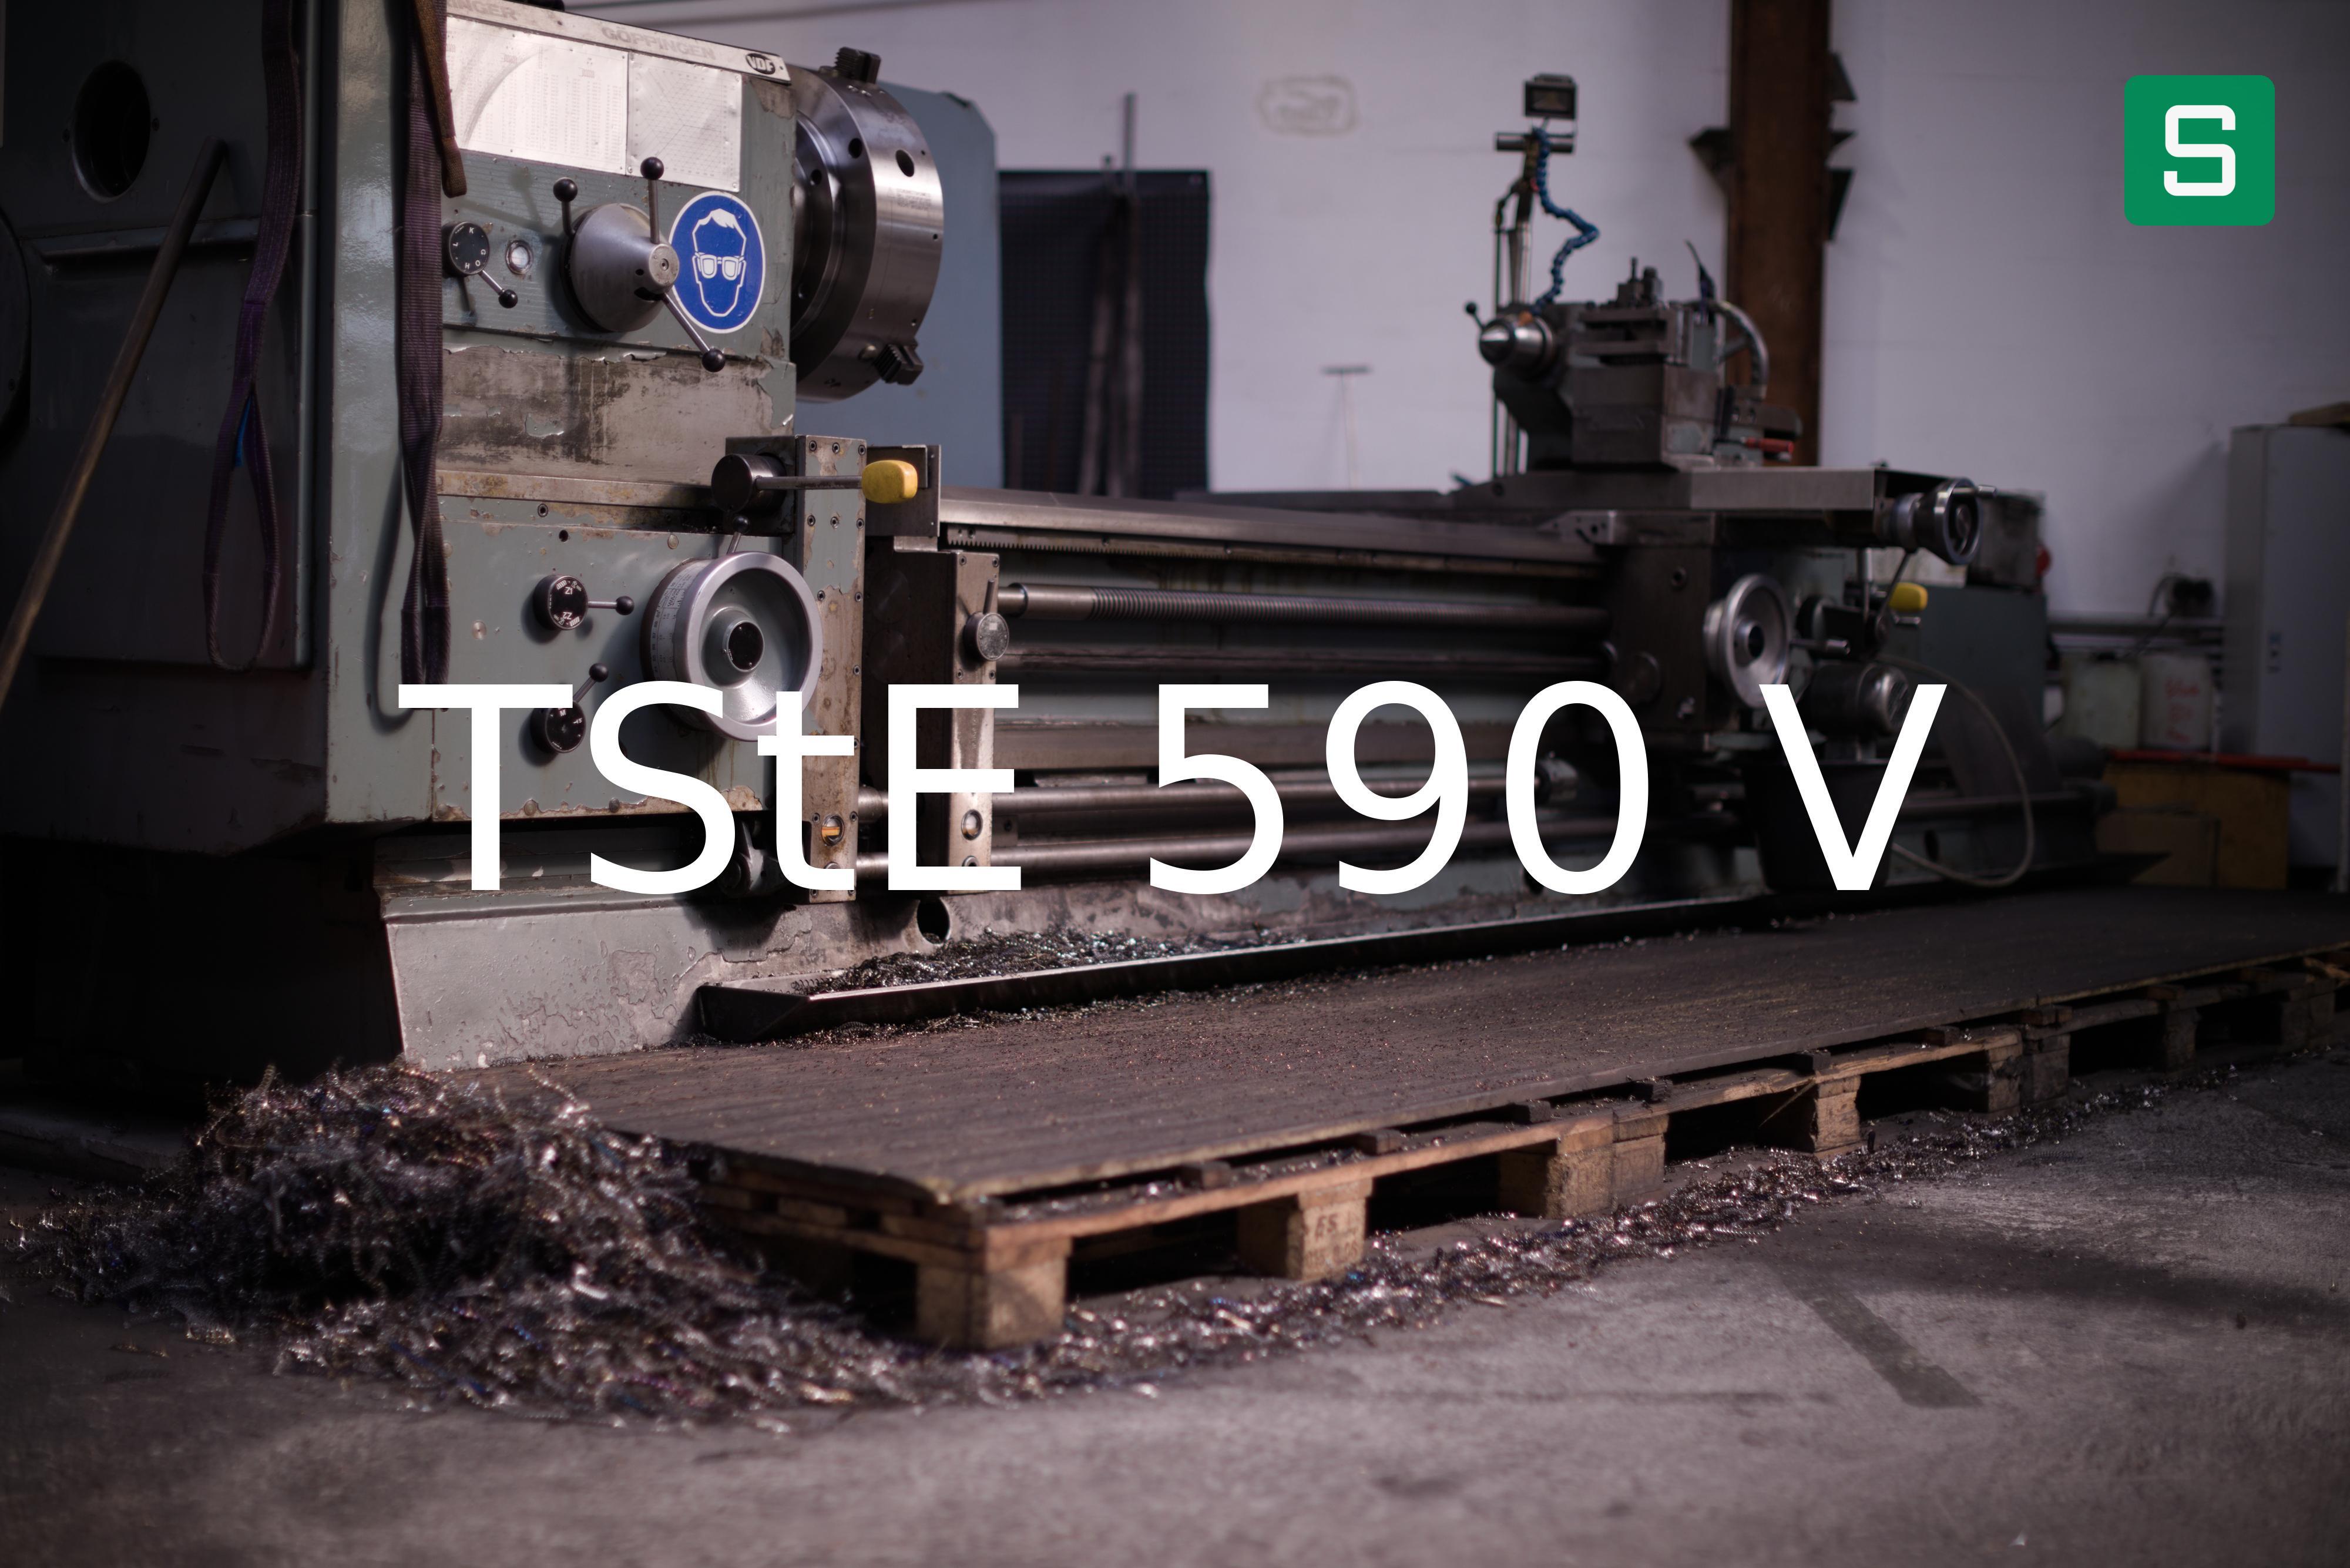 Steel Material: TStE 590 V